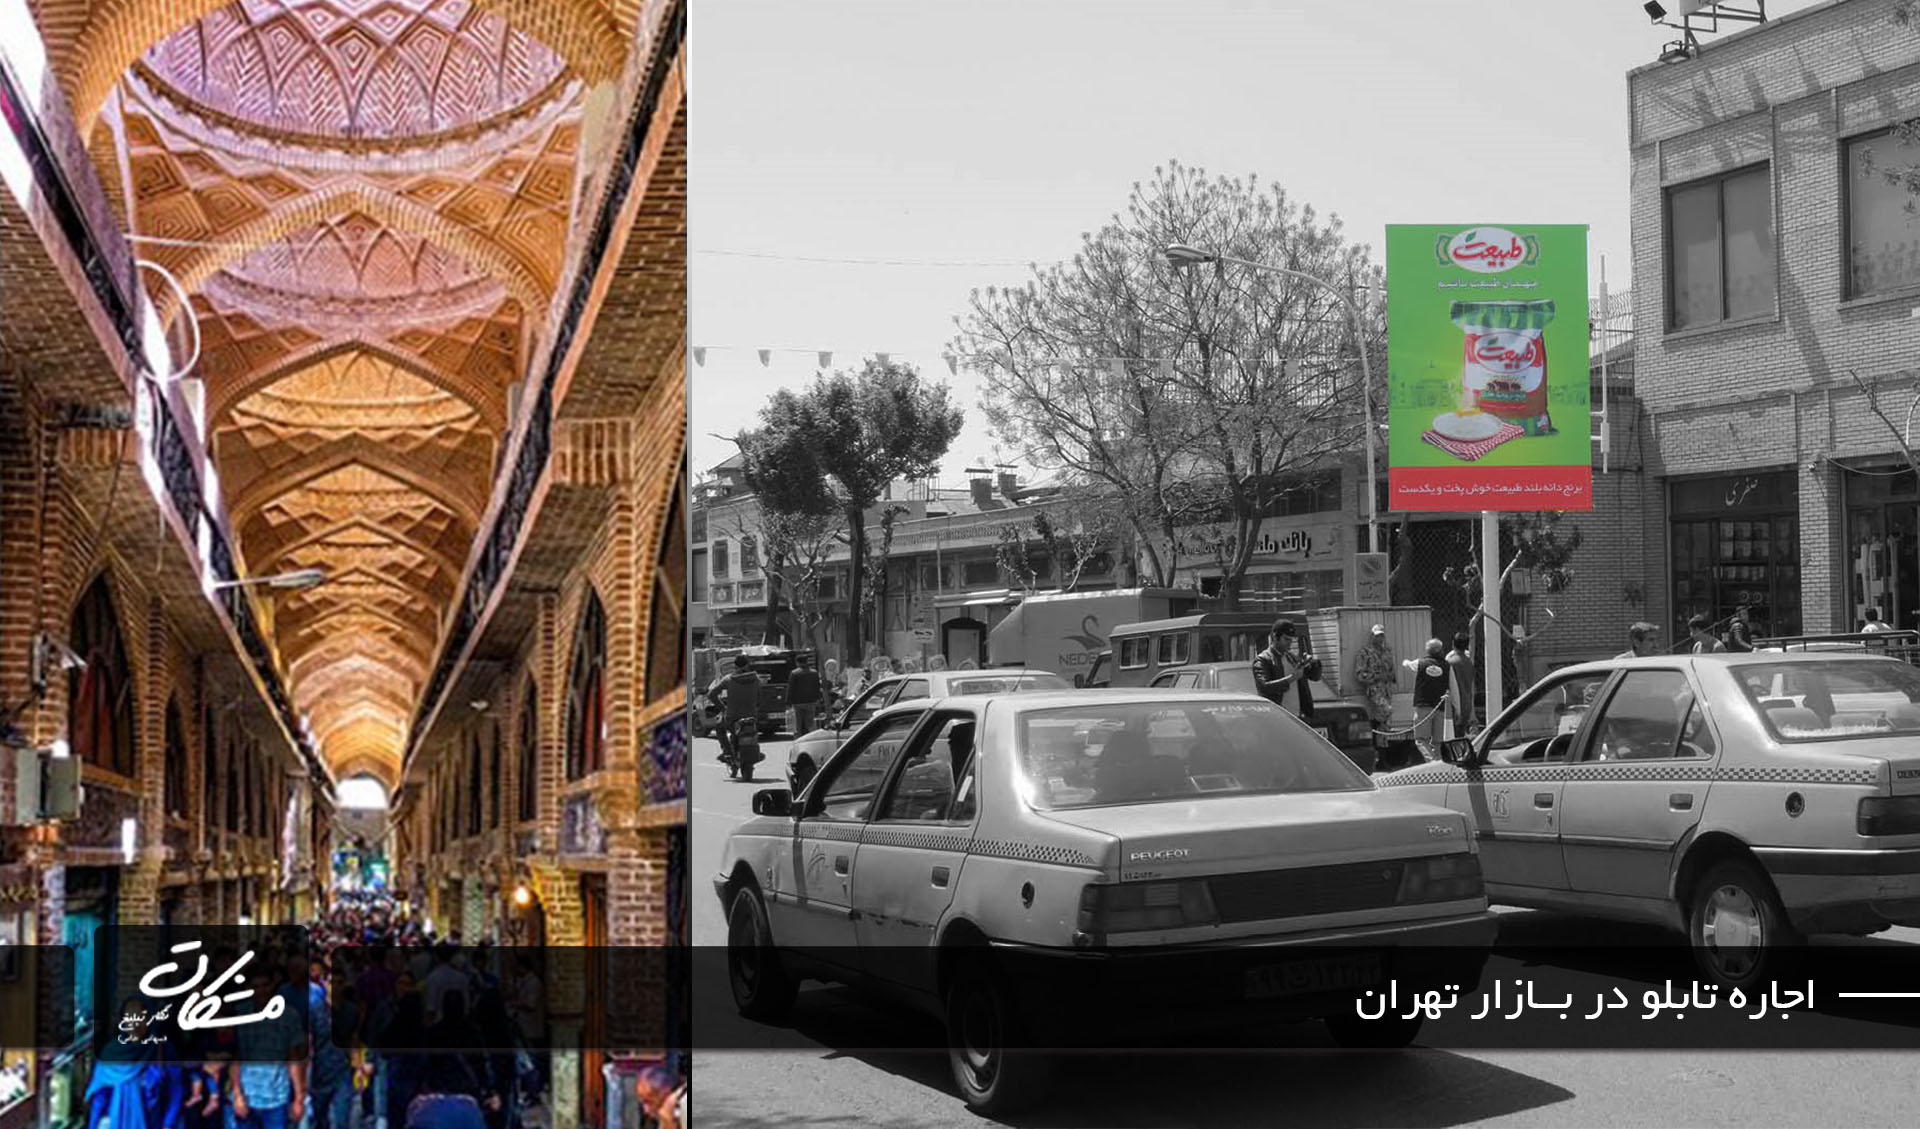 اجاره بیلبورد در بازار تهران